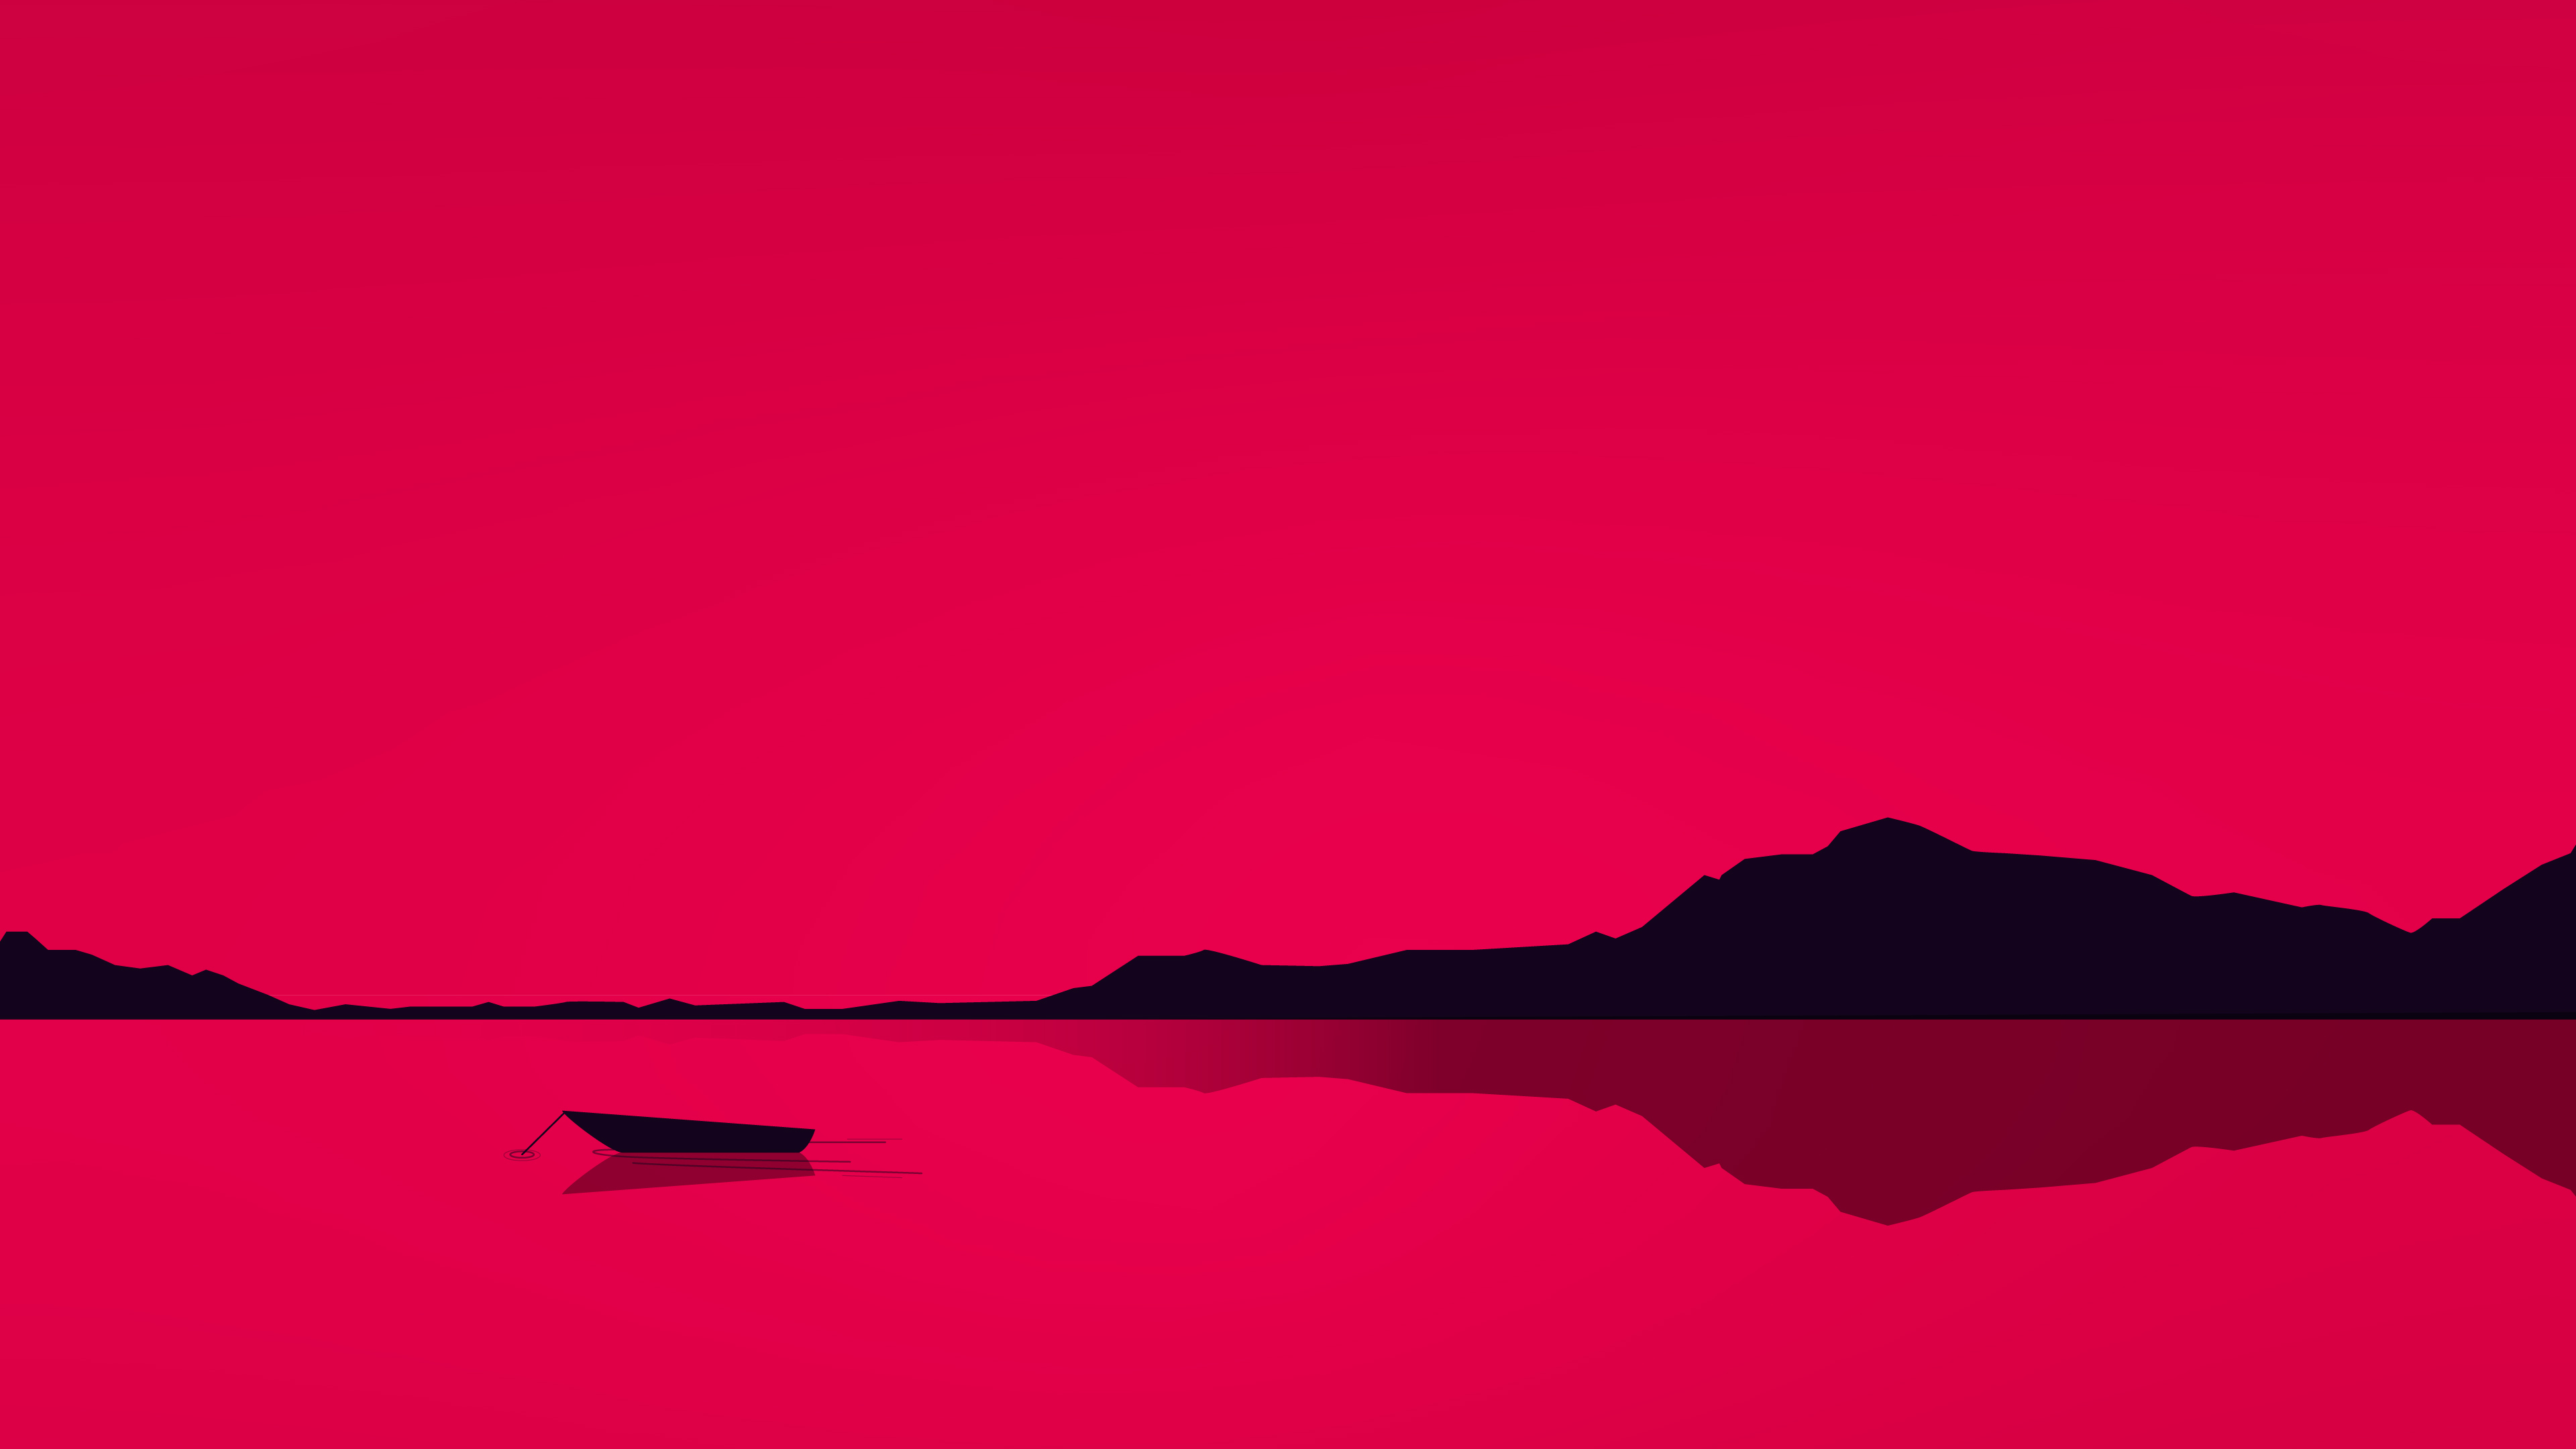 Hồ đỏ tối giản 4K: Với hình nền Hồ đỏ tối giản 4K, bạn sẽ được đắm mình trong không gian yên tĩnh và tĩnh lặng chẳng thể nào giải thích hết. Tầm nhìn đẹp mắt với các sắc thái đỏ huyền bí, các đường phân cách và chi tiết tối giản đơn giản giúp cho hình nền này trở thành một sự lựa chọn hoàn hảo trong việc tạo nên không gian làm việc của bạn.